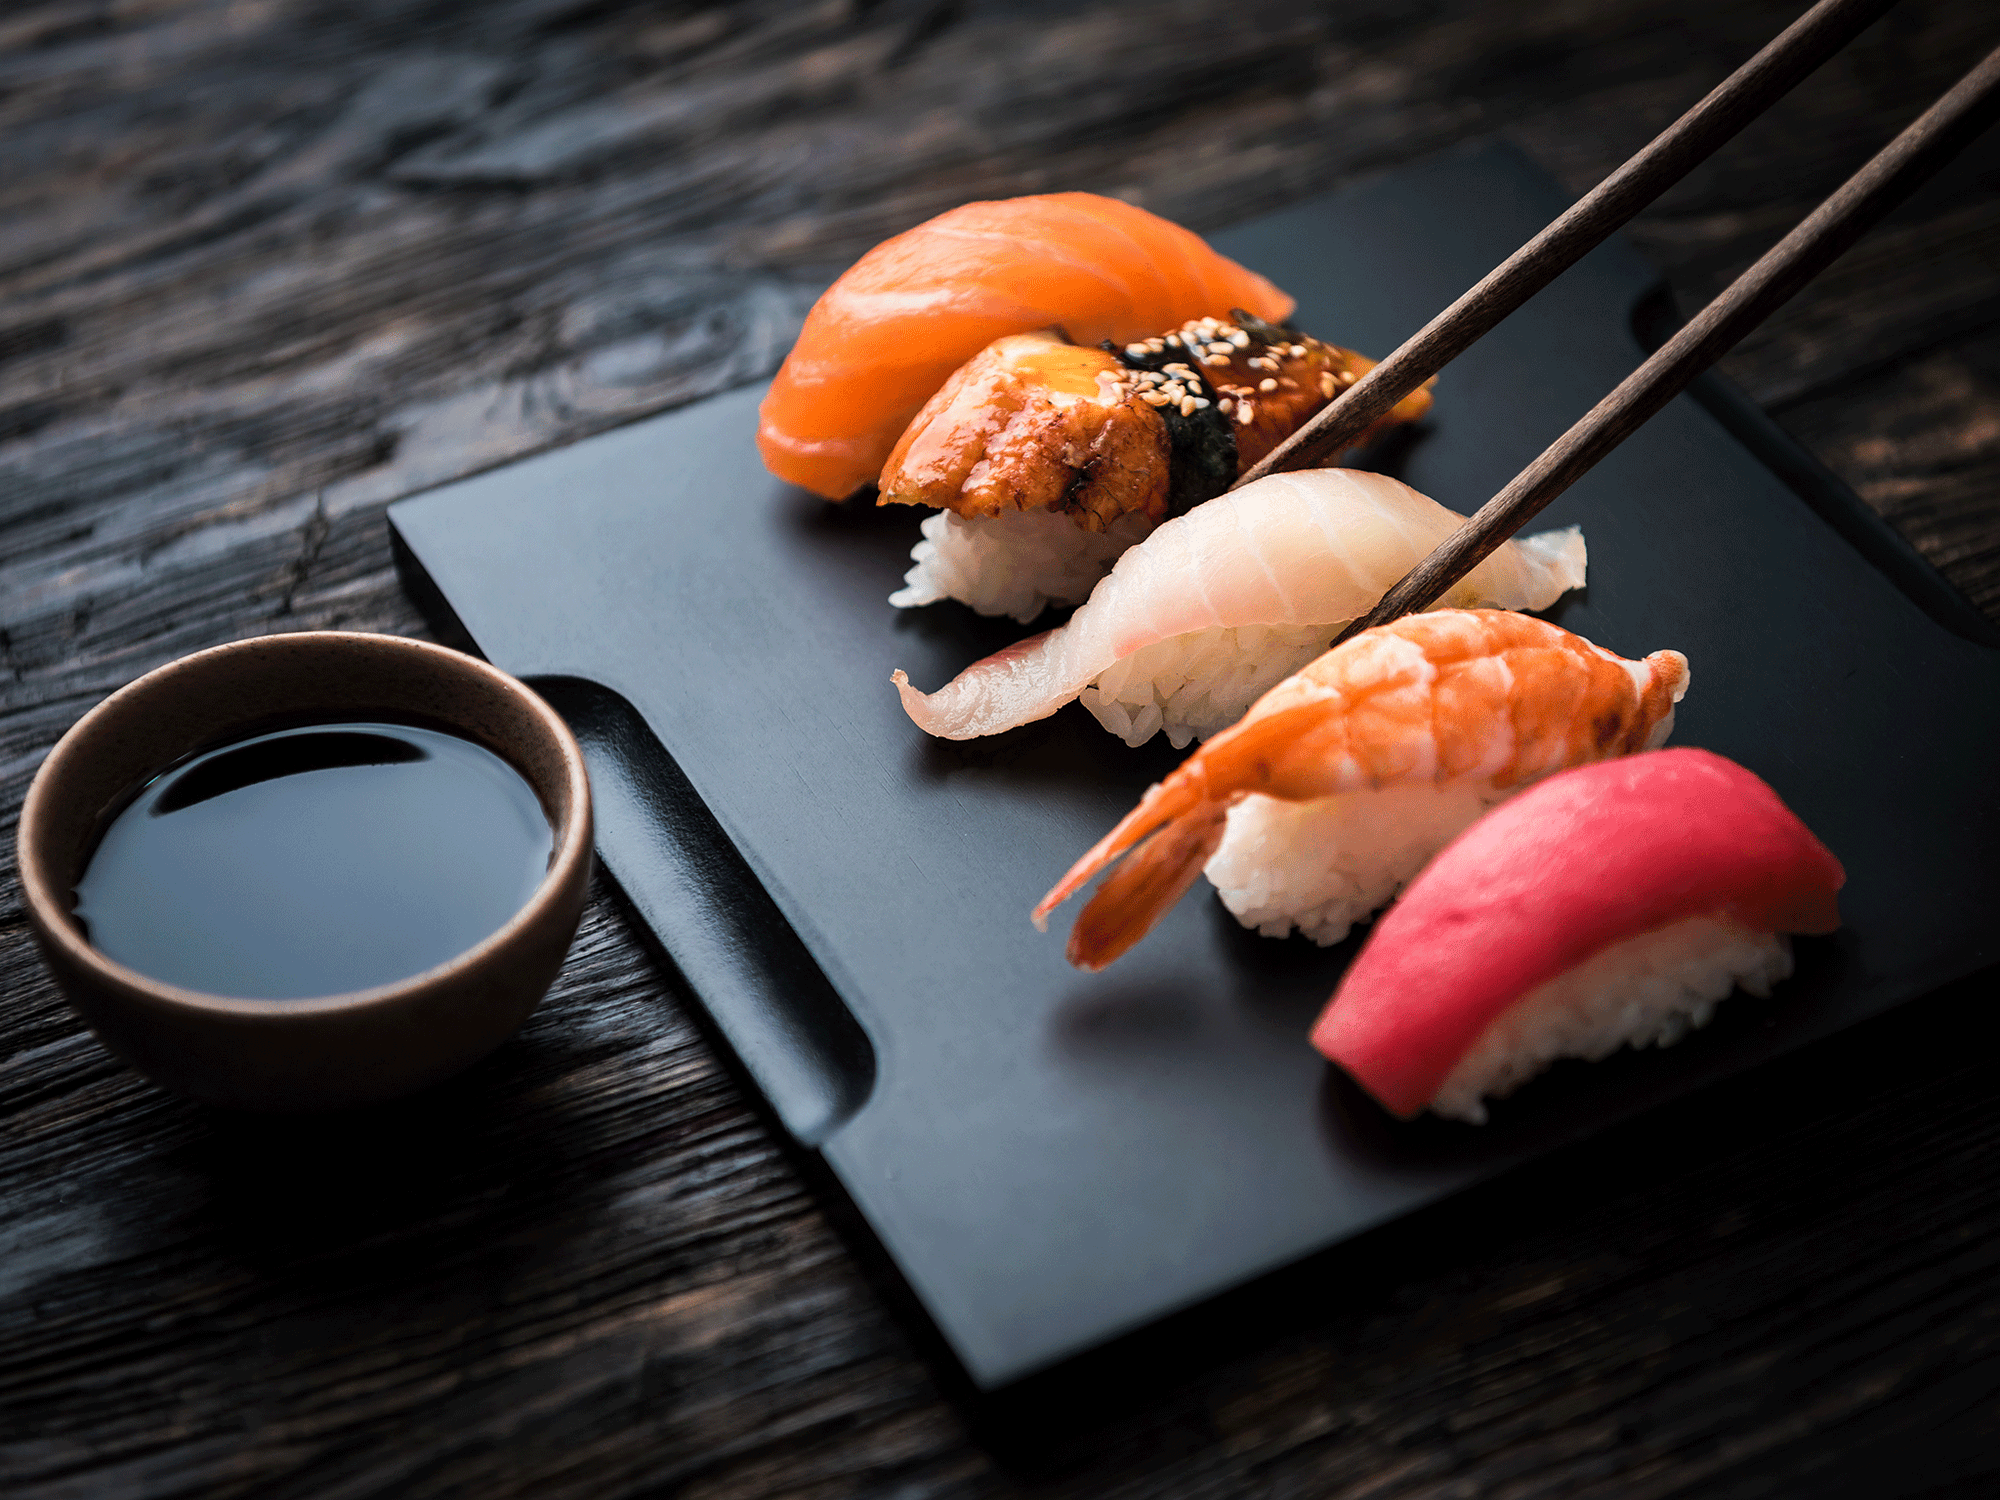 Tại sao người Nhật ăn cá sống mỗi ngày mà không sợ bị nhiễm ký sinh trùng? - Ảnh 2.